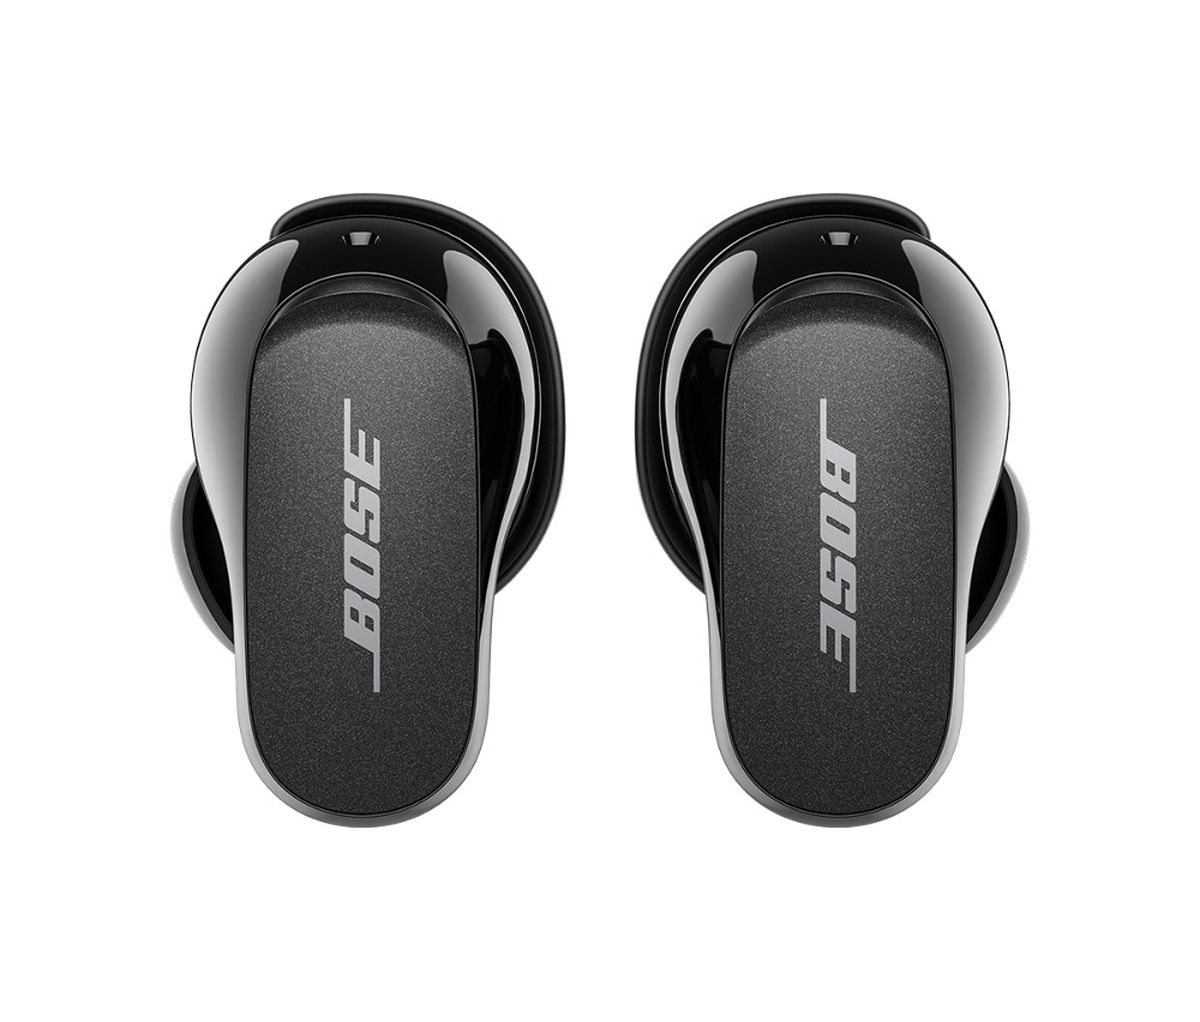 Bose Noise Cancelling Headphones 700 Auriculares inalámbricos Diadema  Llamadas/Música Bluetooth Negro - Bose